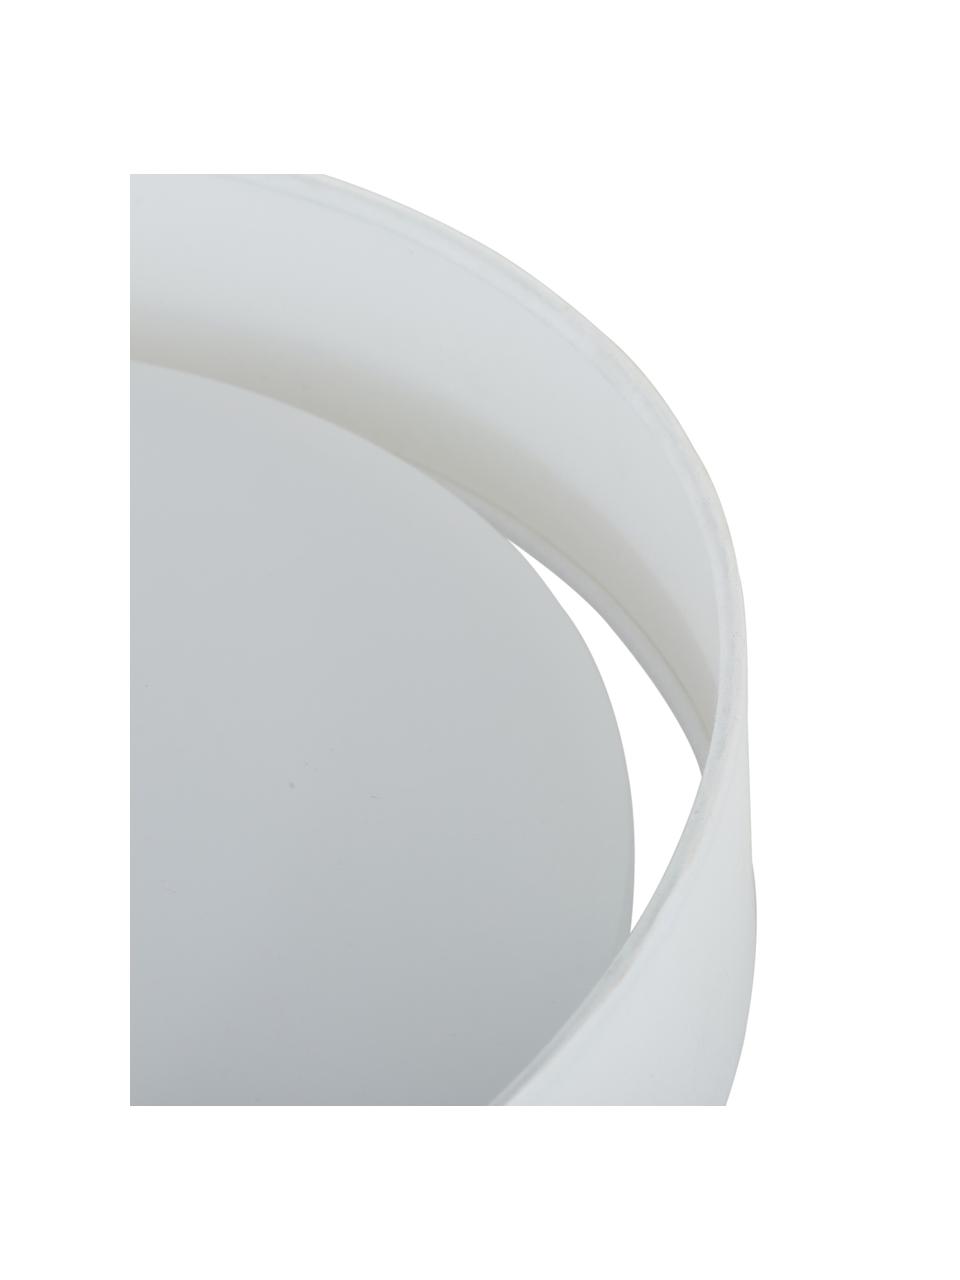 LED plafondlamp Helen in wit, Diffuser: kunststof, Wit, Ø 52 x H 11 cm